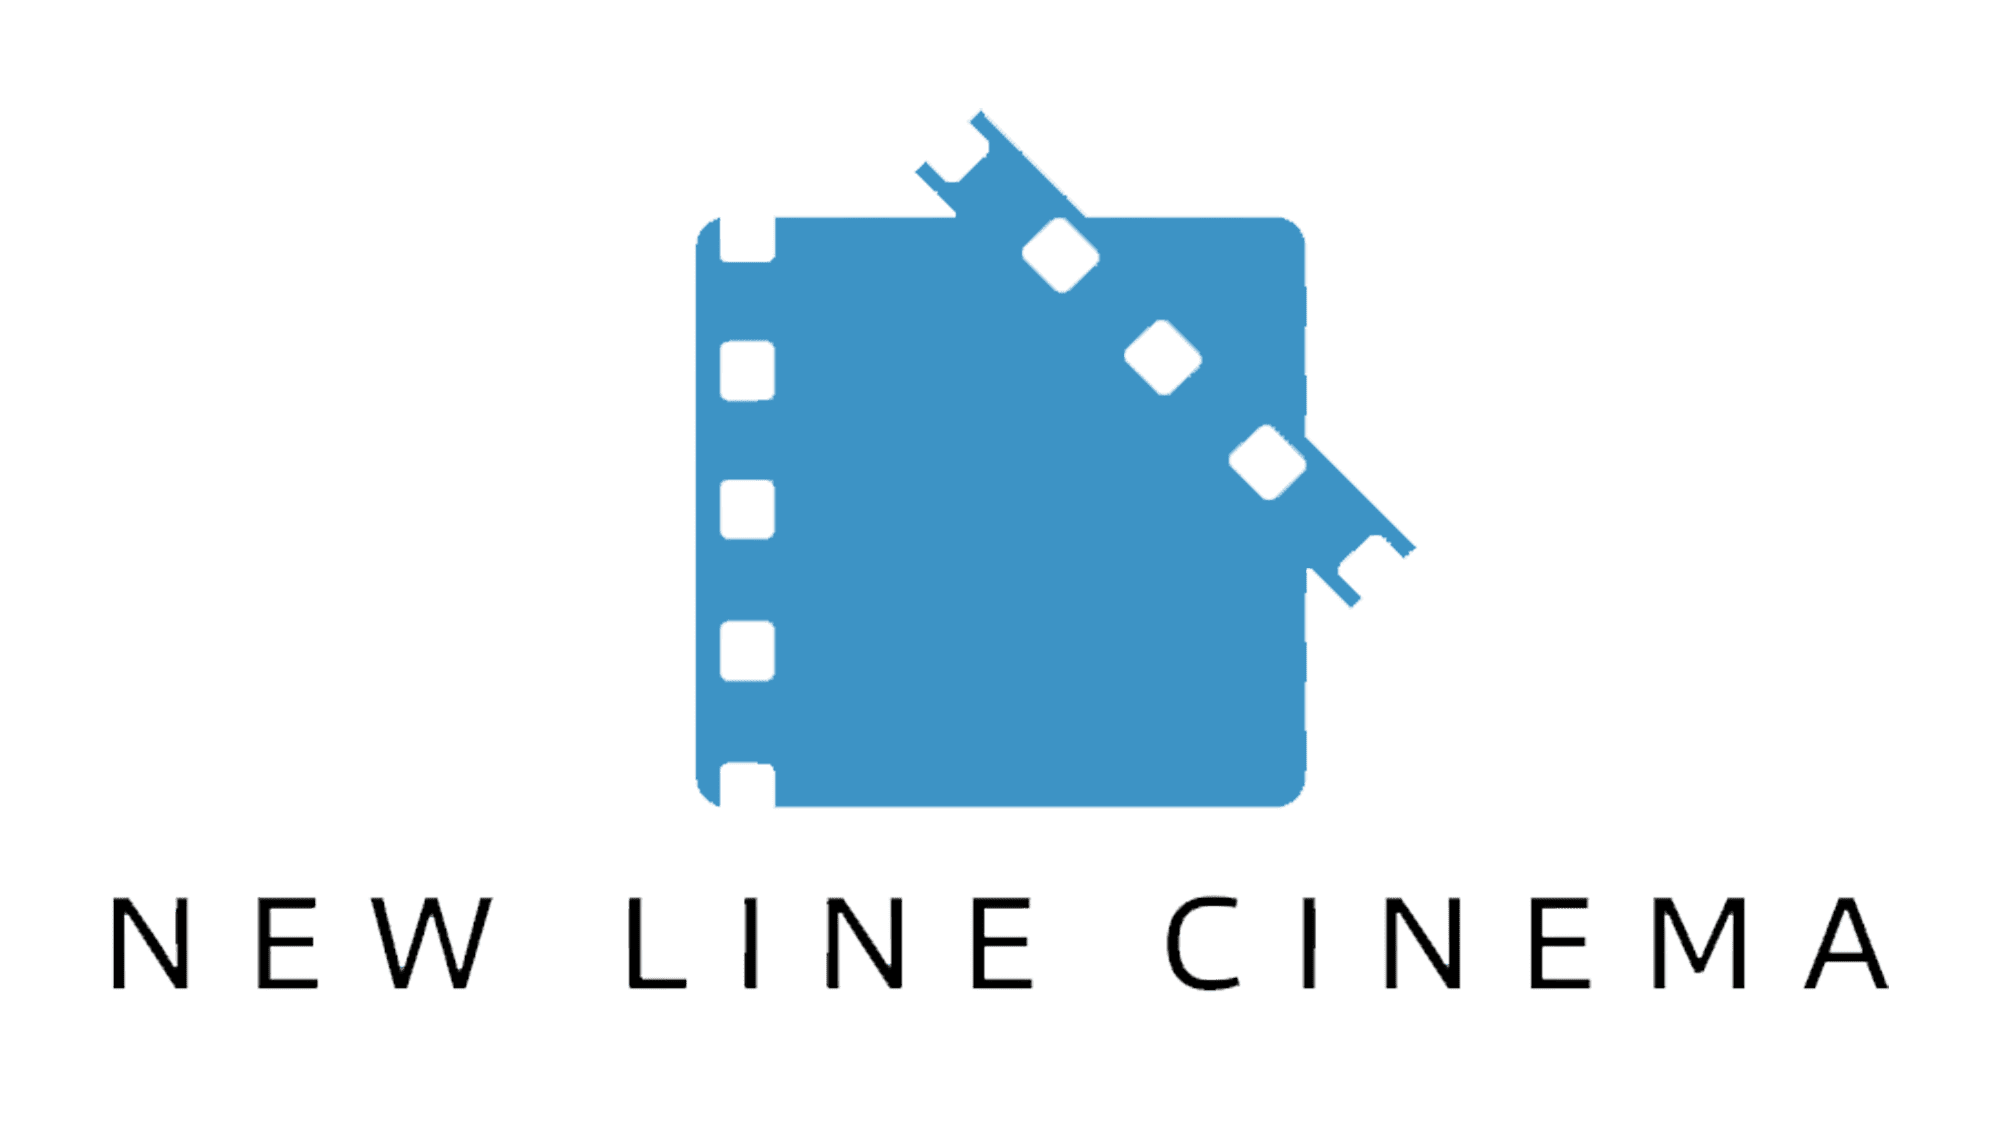 Movie Theater Logos